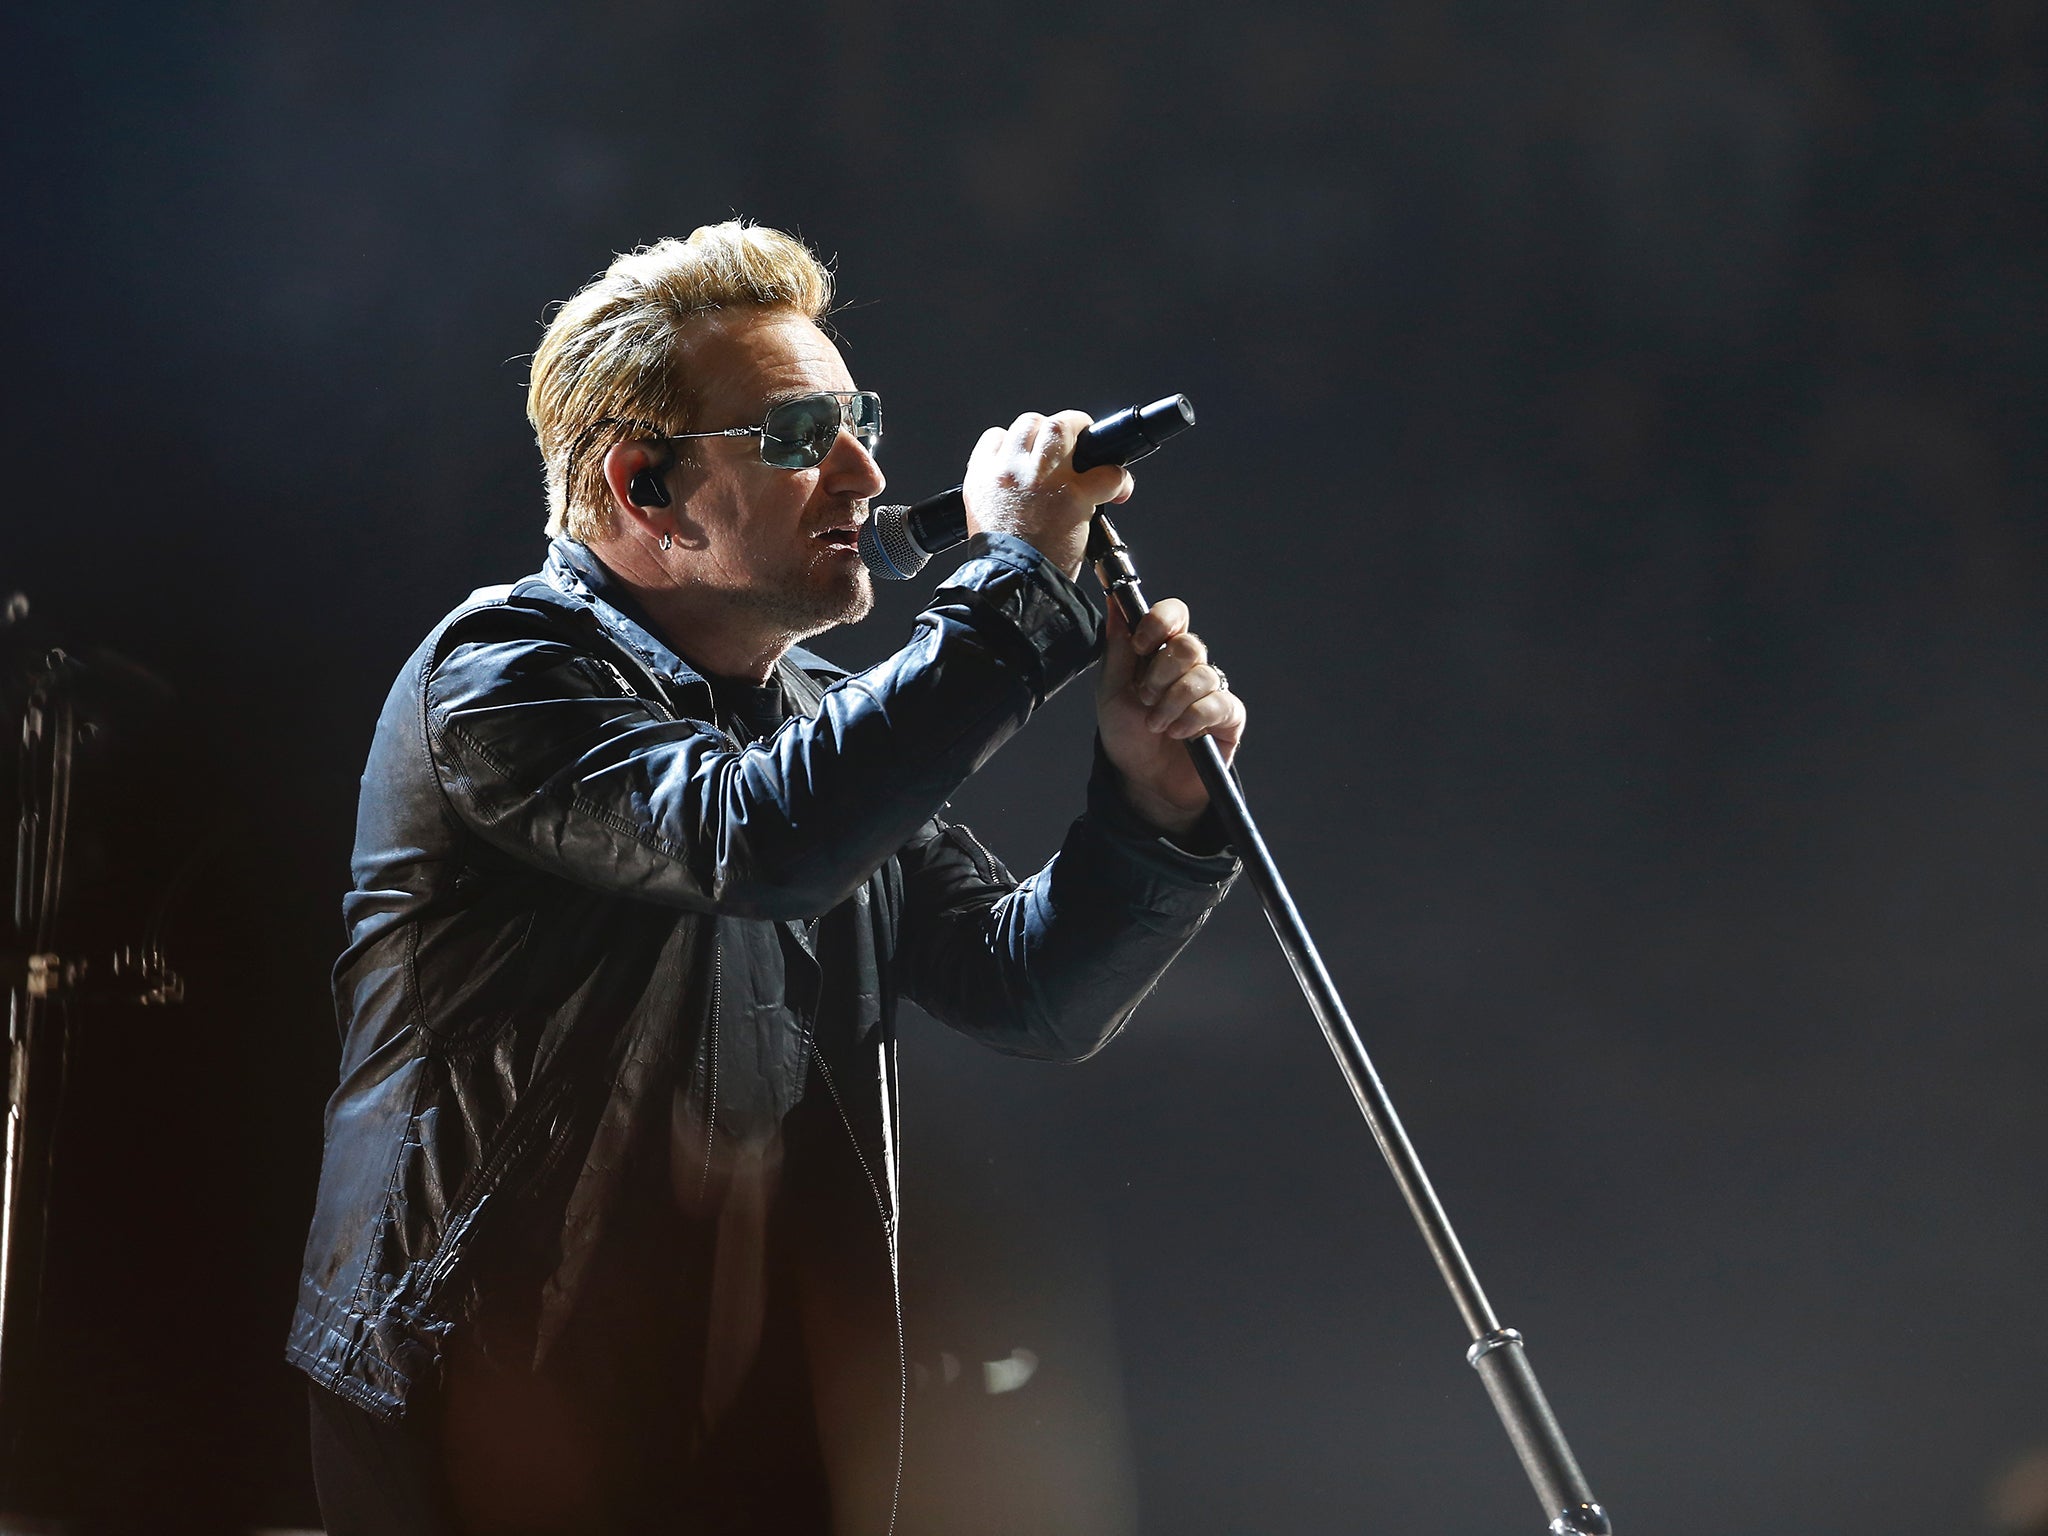 “Pro bono”: A fan of the U2 singer